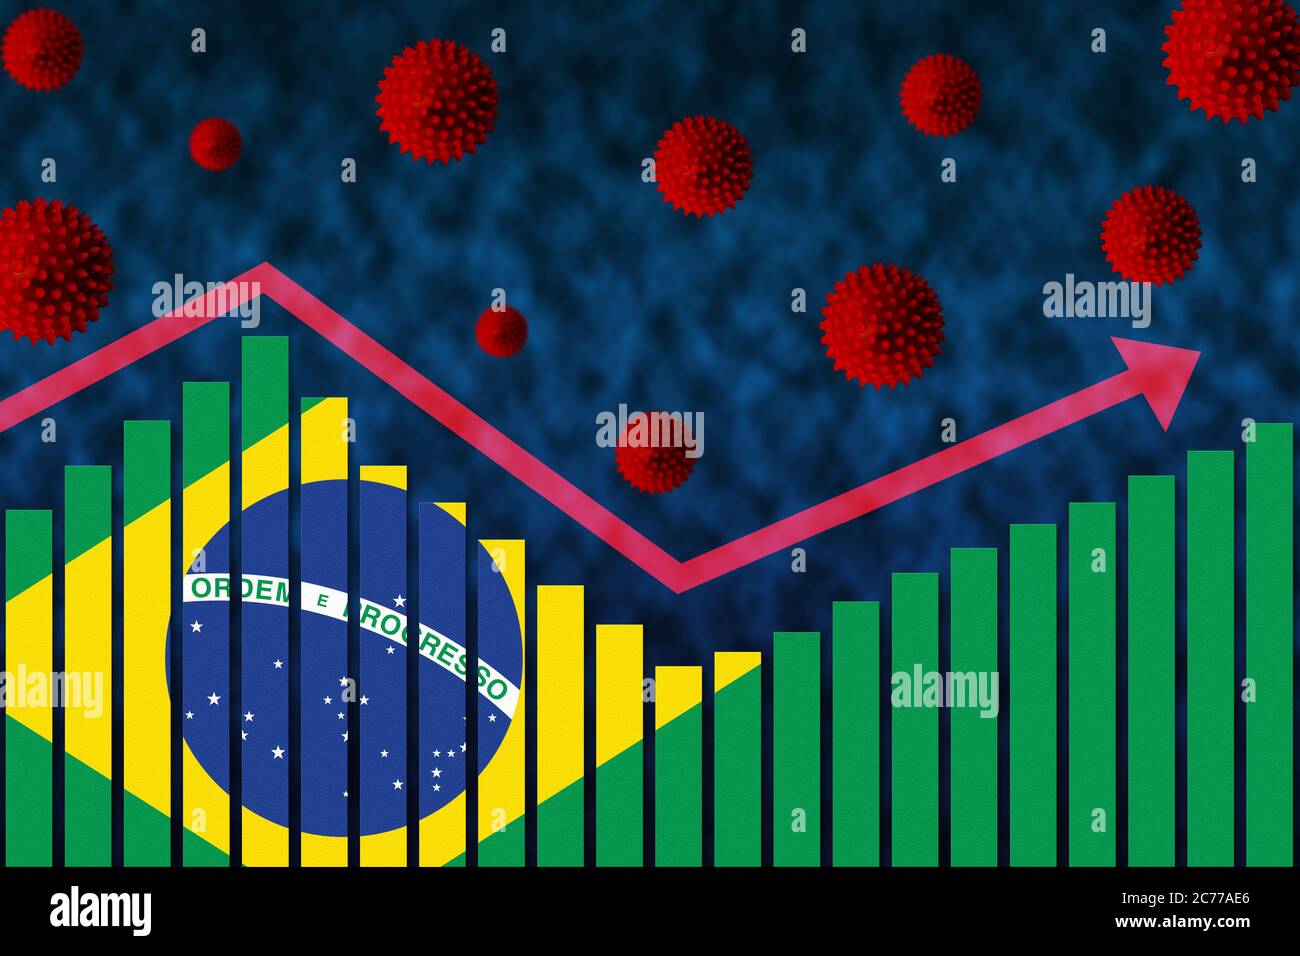 Flagge Brasiliens auf Balkendiagramm Konzept der COVID-19 Coronavirus-Infektionen mit zweiter Welle nach der ersten Welle, dargestellt durch Grafik und Virussymbole af Stockfoto